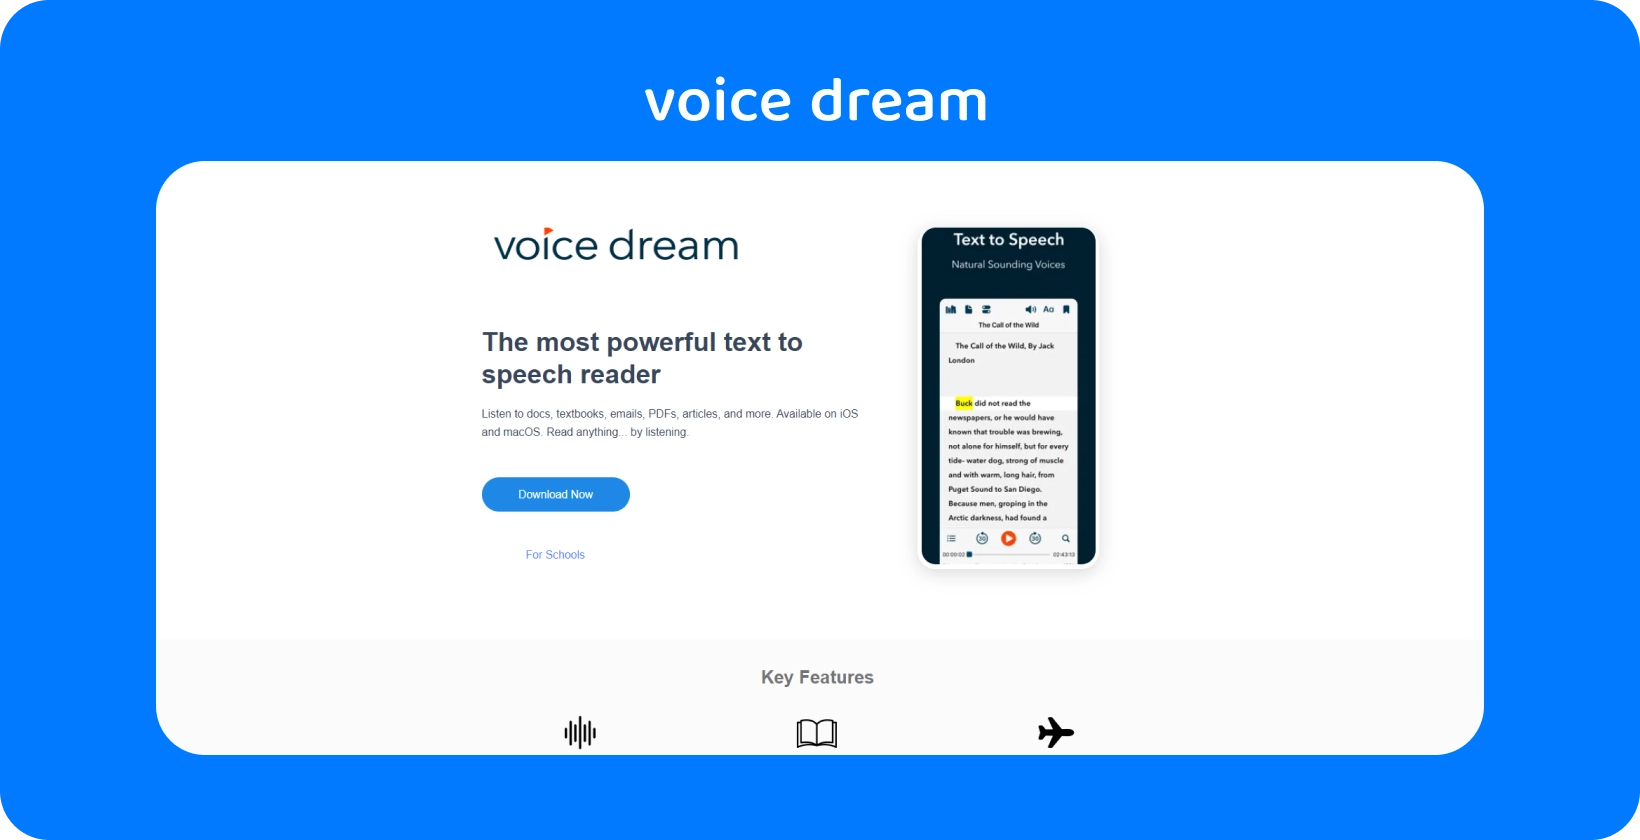 Rozhranie aplikácie Voice Dream predstavuje výkonnú čítačku textu na reč pre rôzne dokumenty na mobilných zariadeniach.